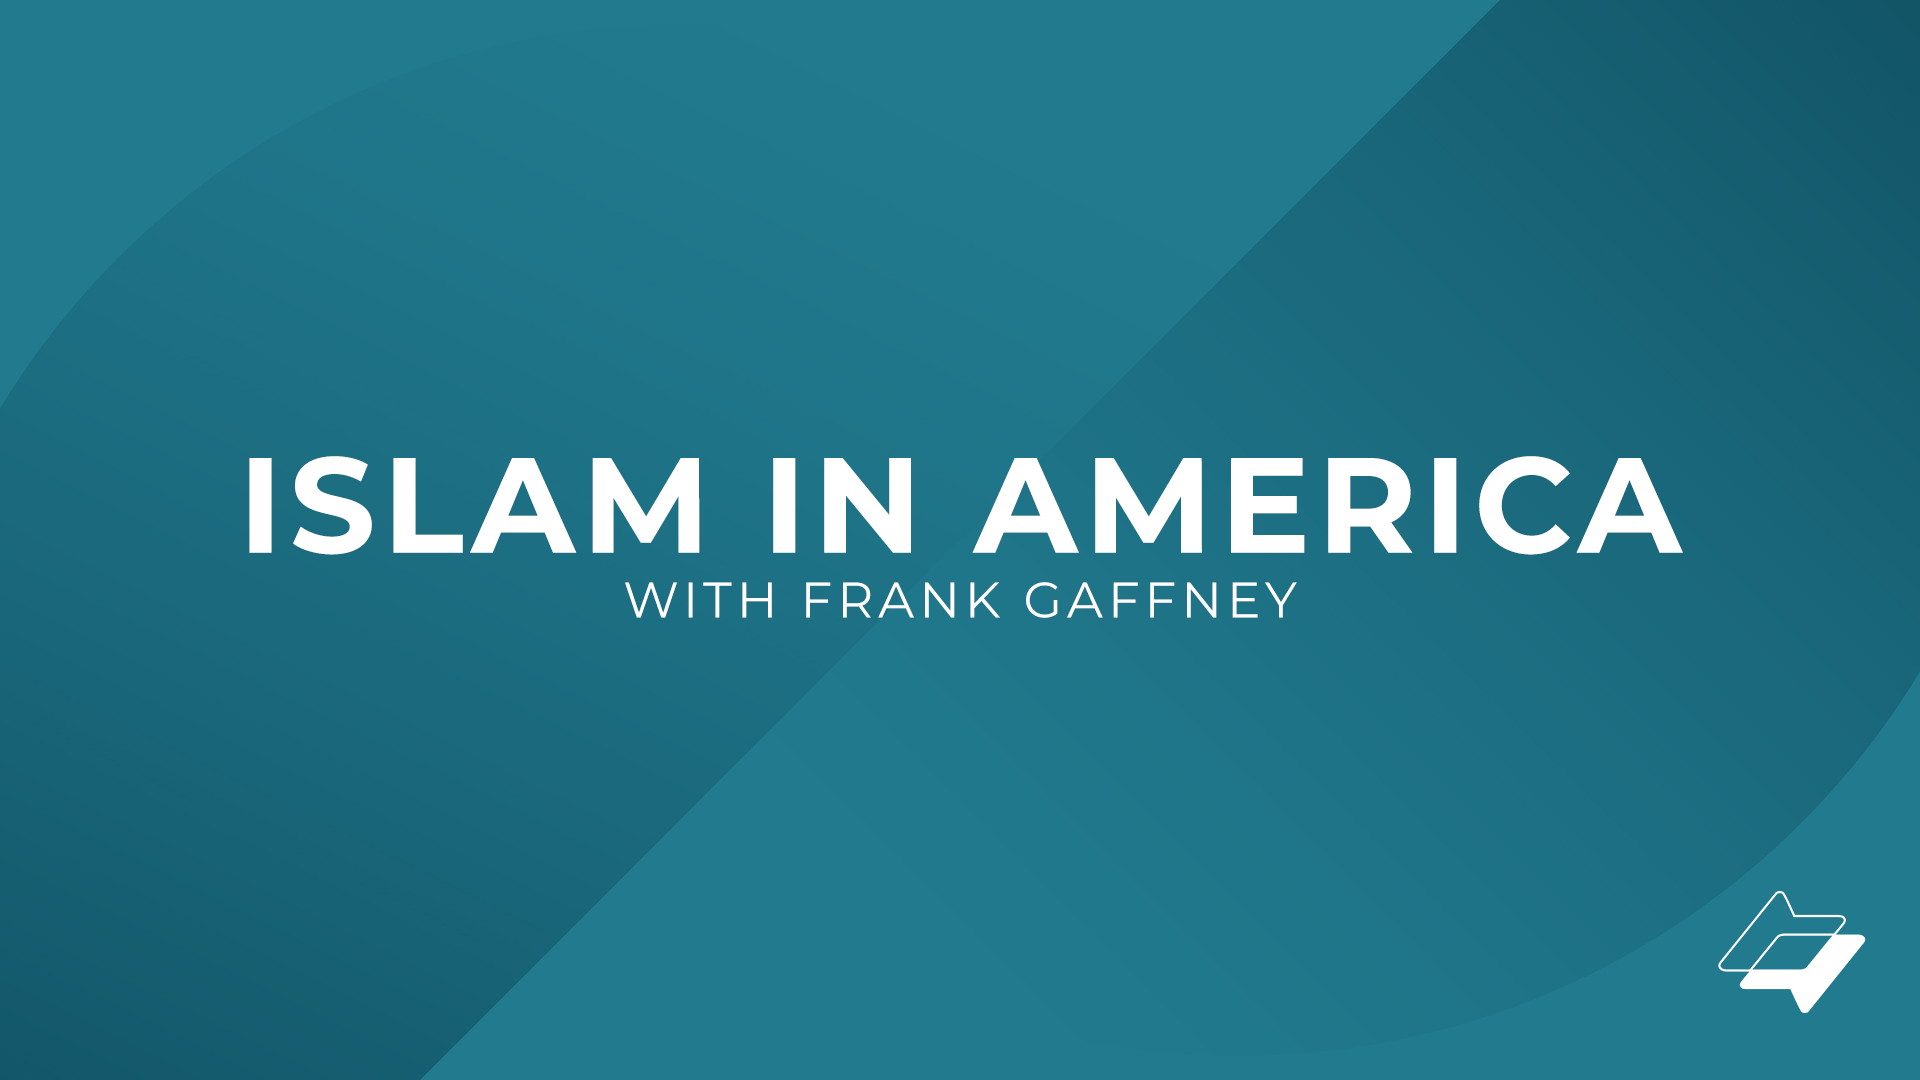 Islam in America with Frank Gaffney